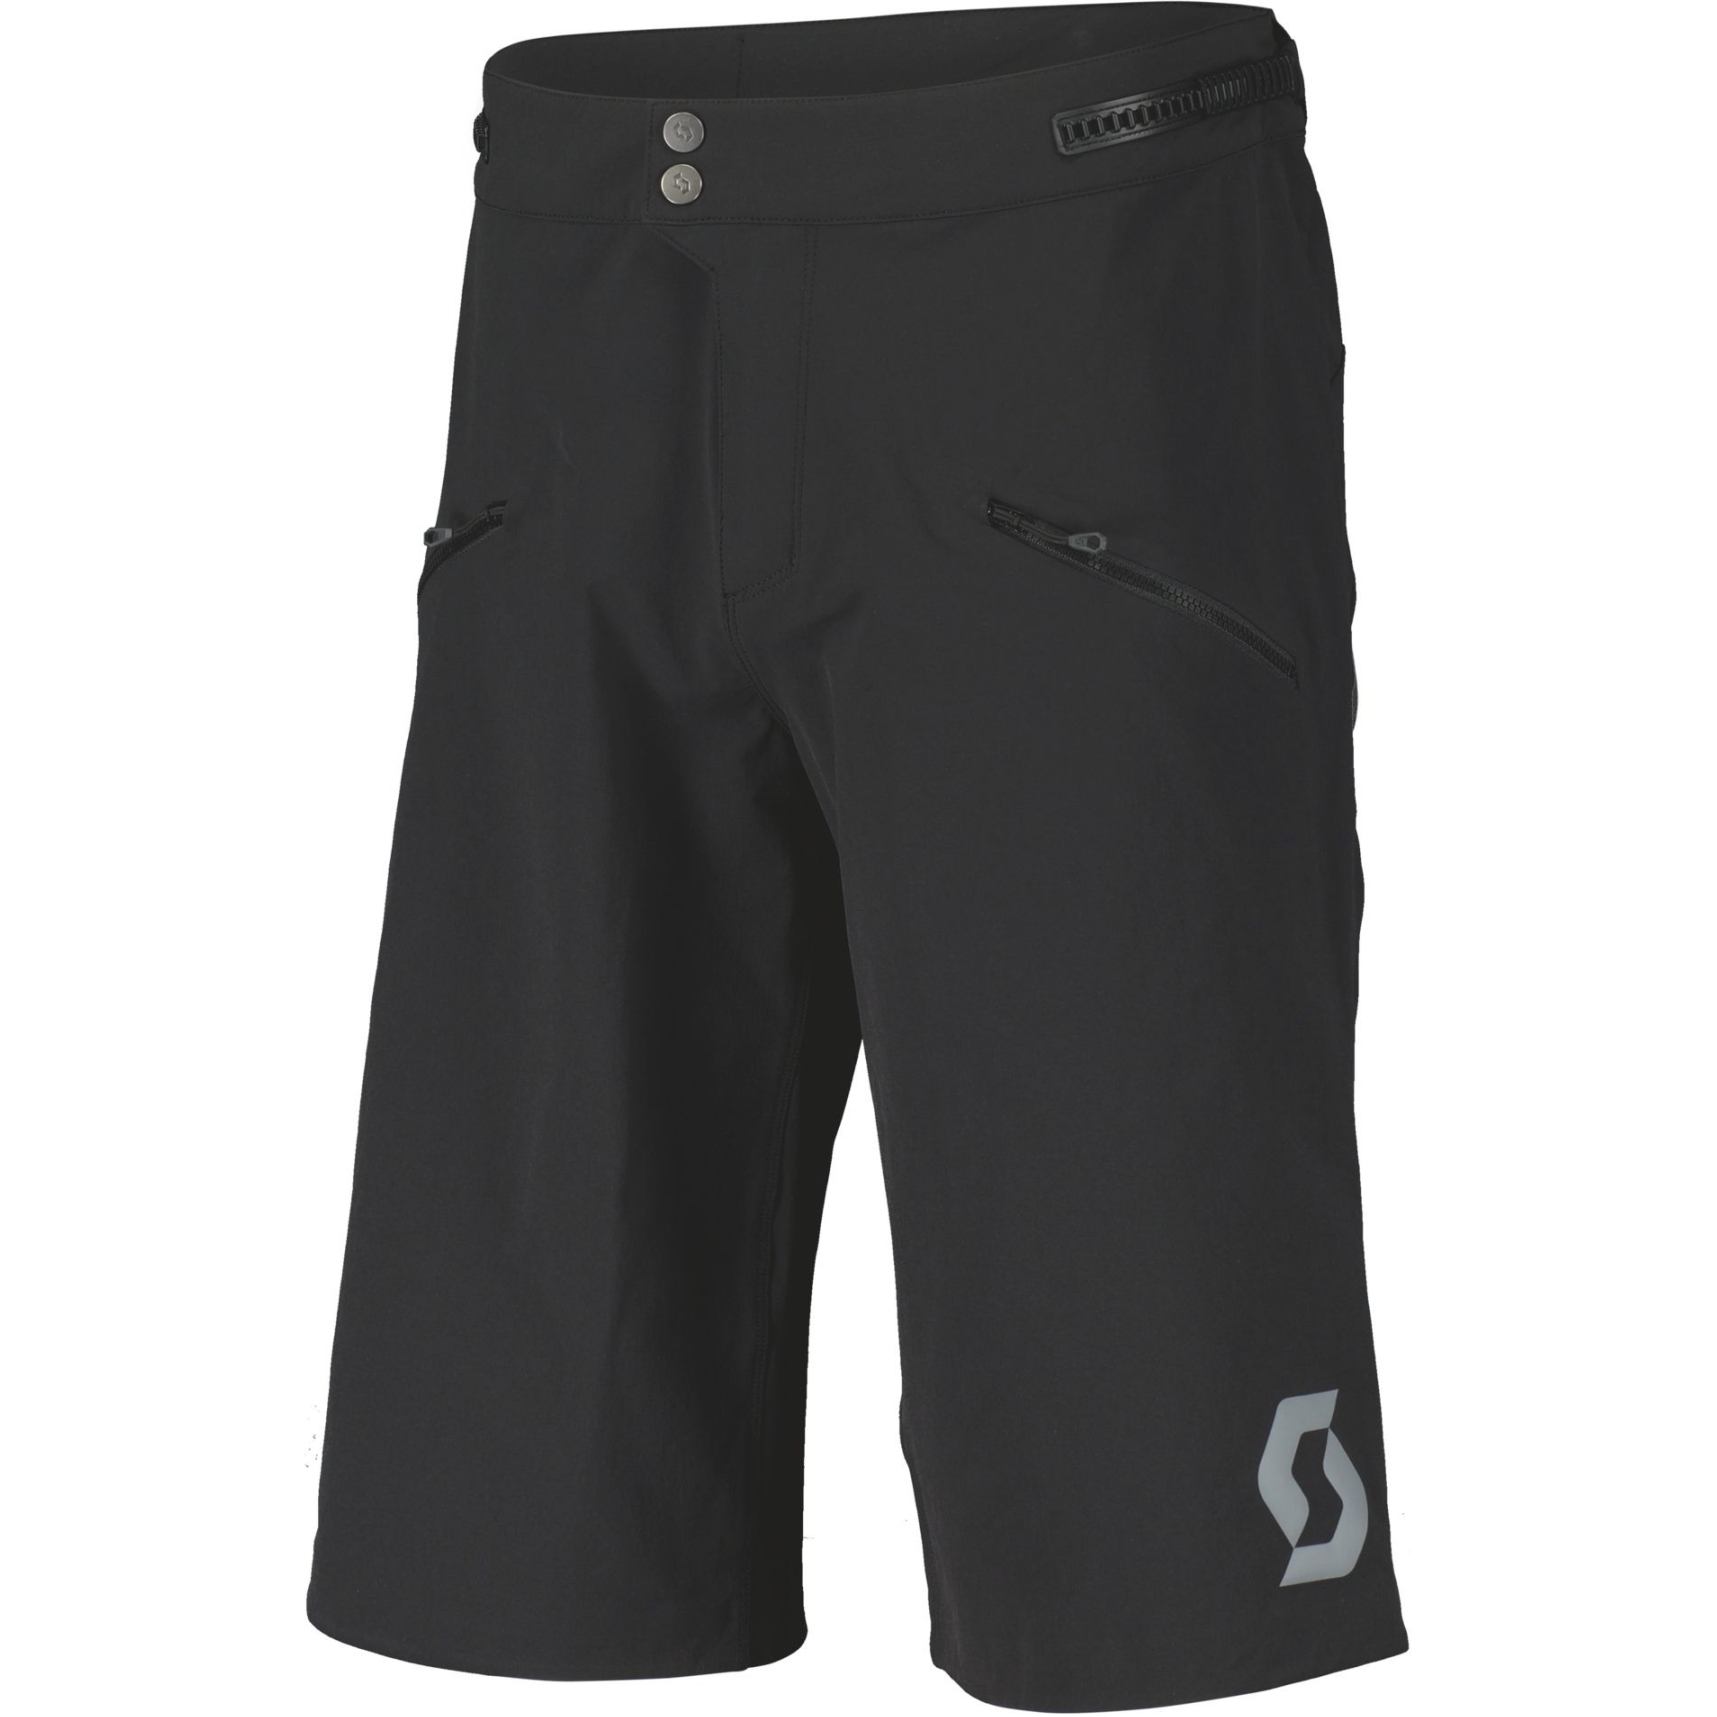 Produktbild von SCOTT Trail Vertic Pro w/ Pad Shorts mit Sitzpolster Herren - schwarz